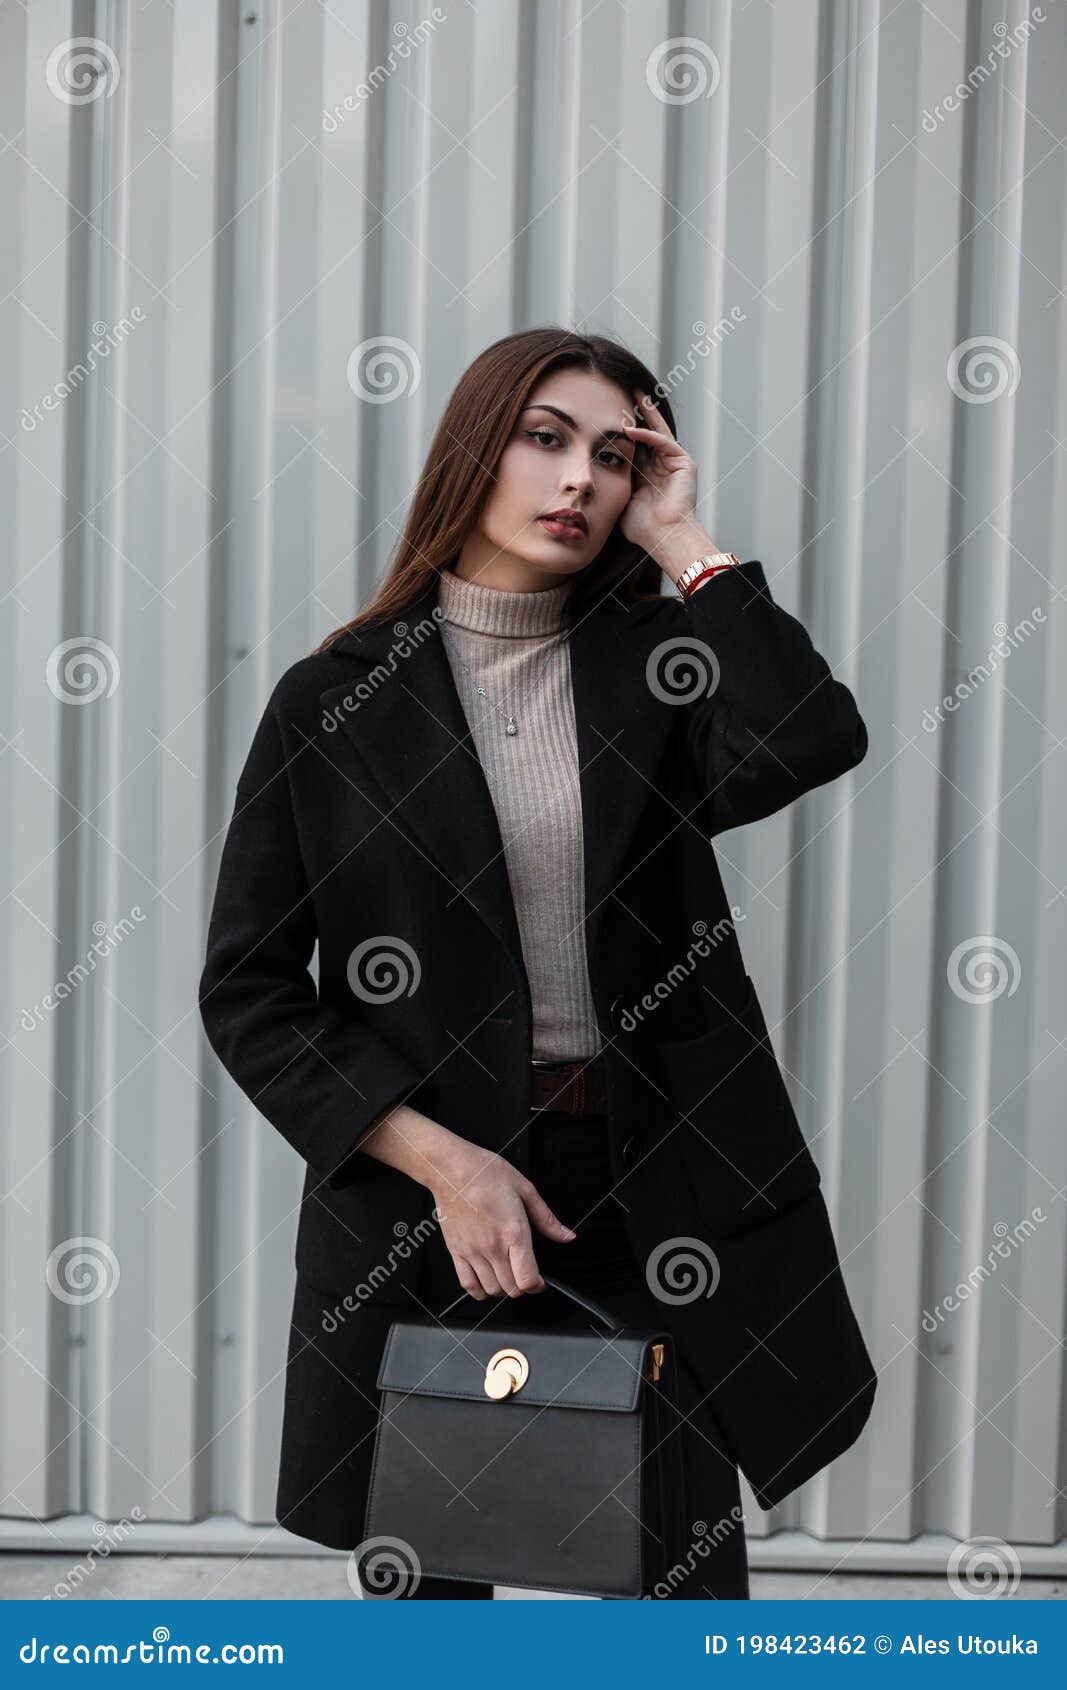 manteau noir femme luxe